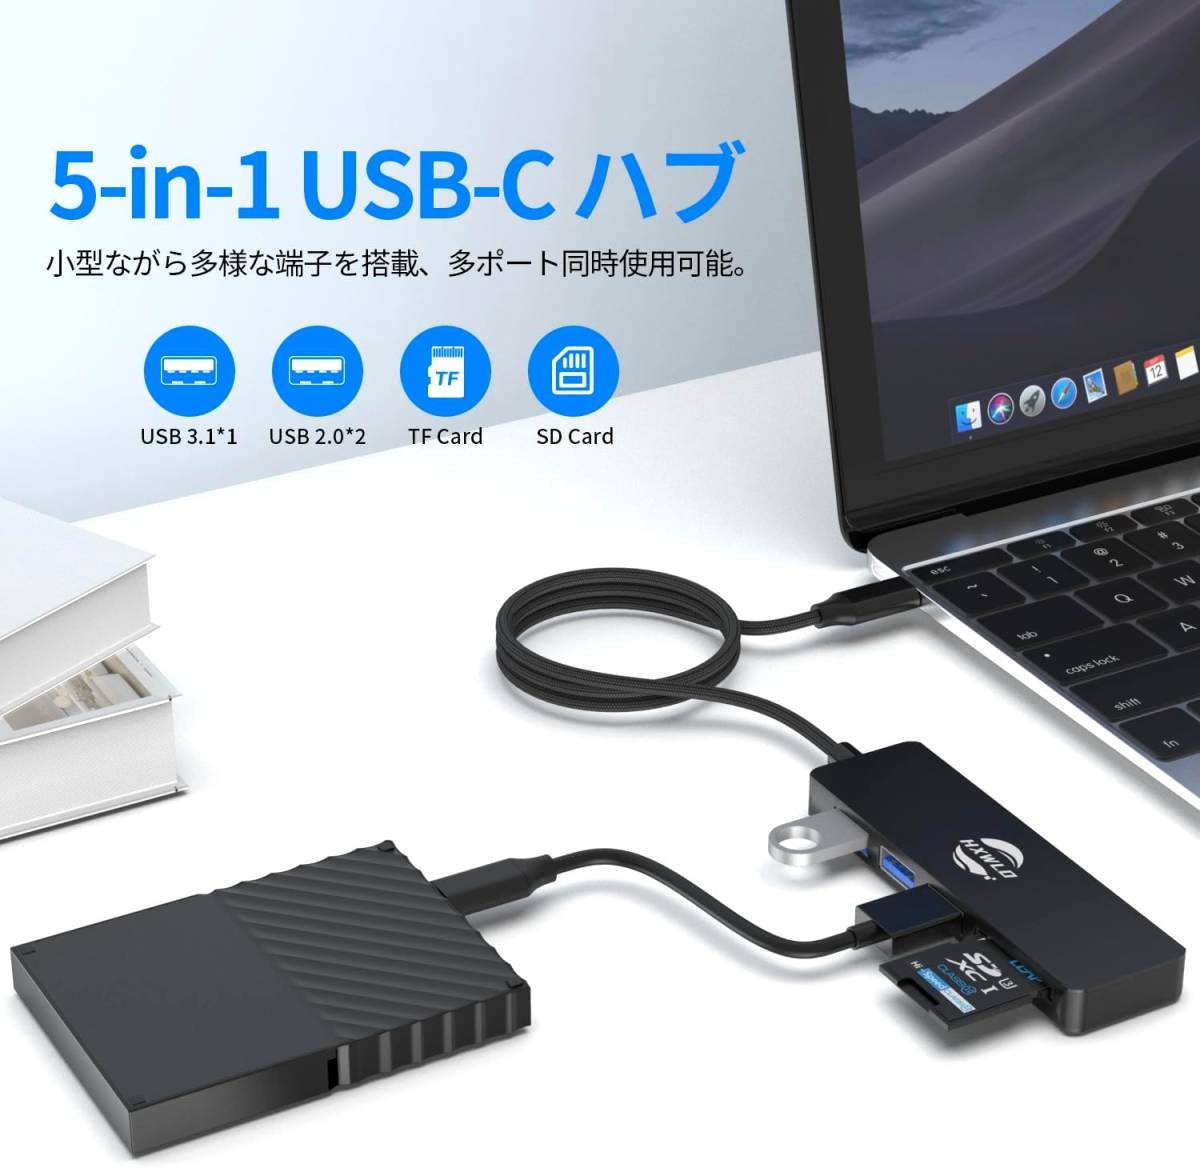 USB C ハブ アダプタ 5-in-1ドッキングステーション USBハブ Type-C 変換アダプタ_画像2